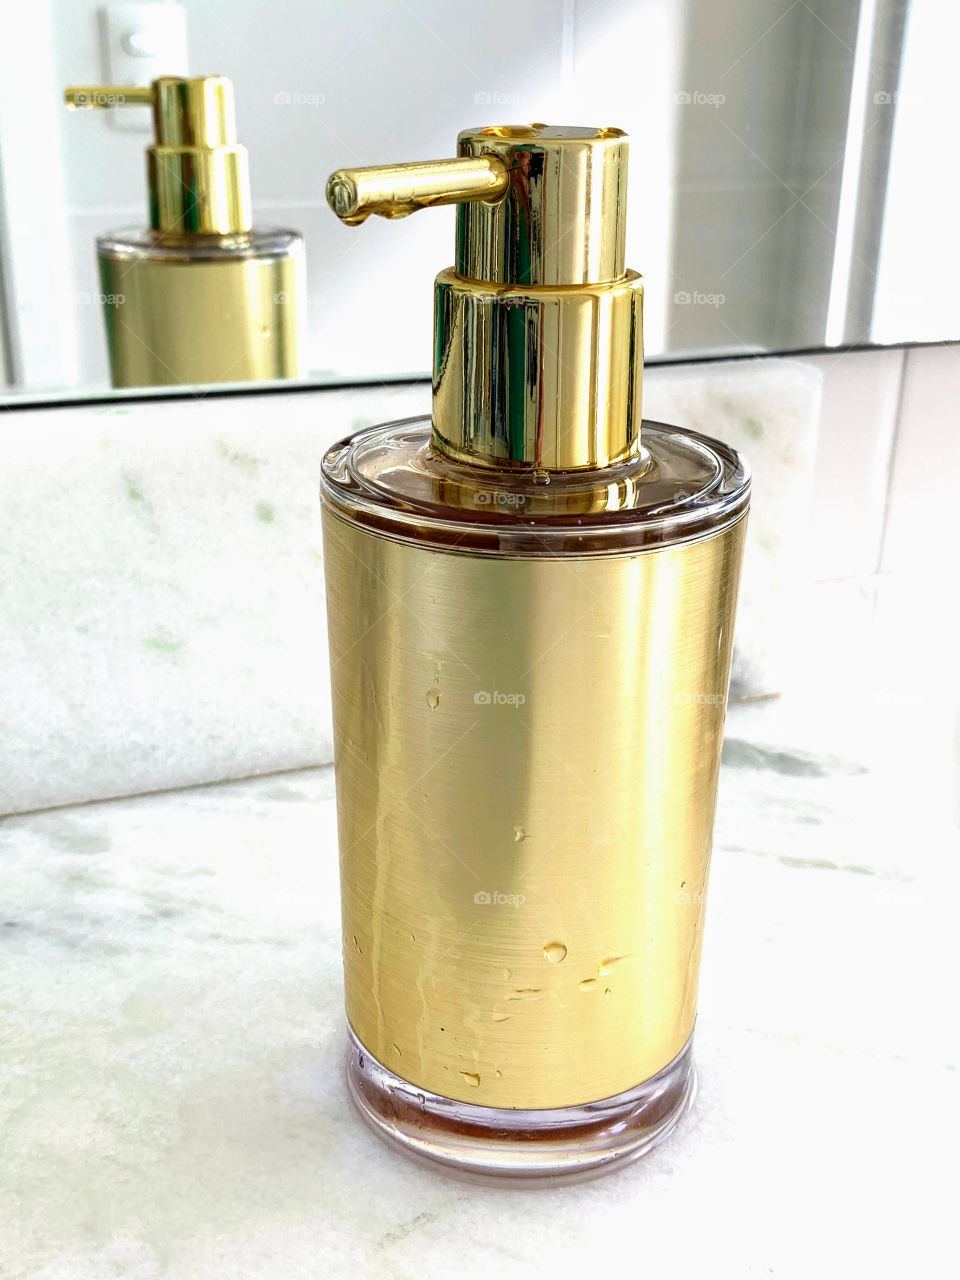 golden bottle in the bathroom sink